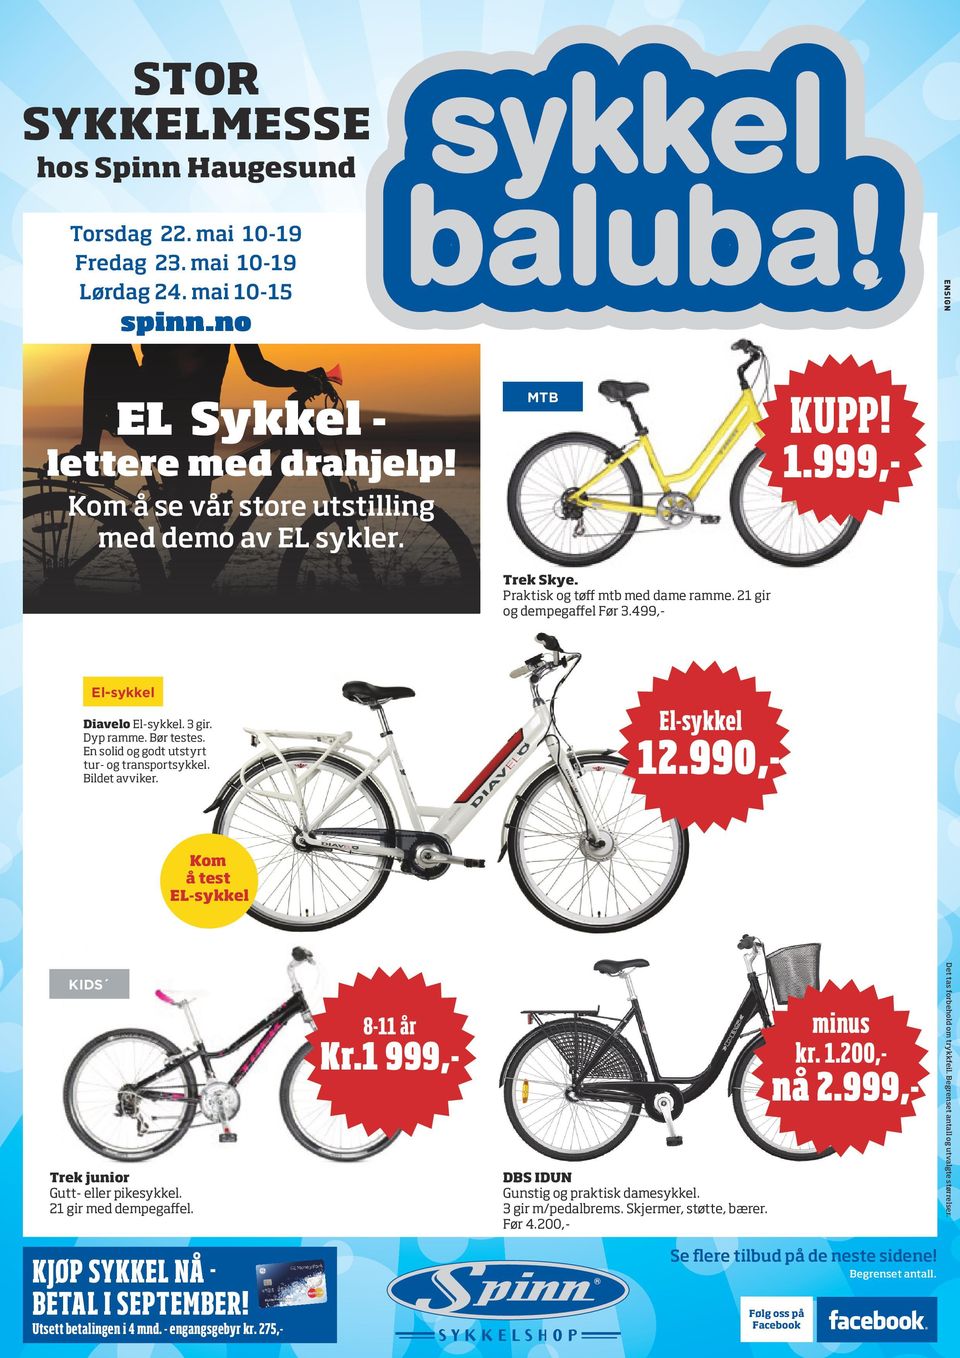 KUPP! ,- EL Sykkel - lettere med drahjelp! 1.999,- STOR SYKKELMESSE. nå  2.999,- Kr.1 999,- - PDF Gratis nedlasting